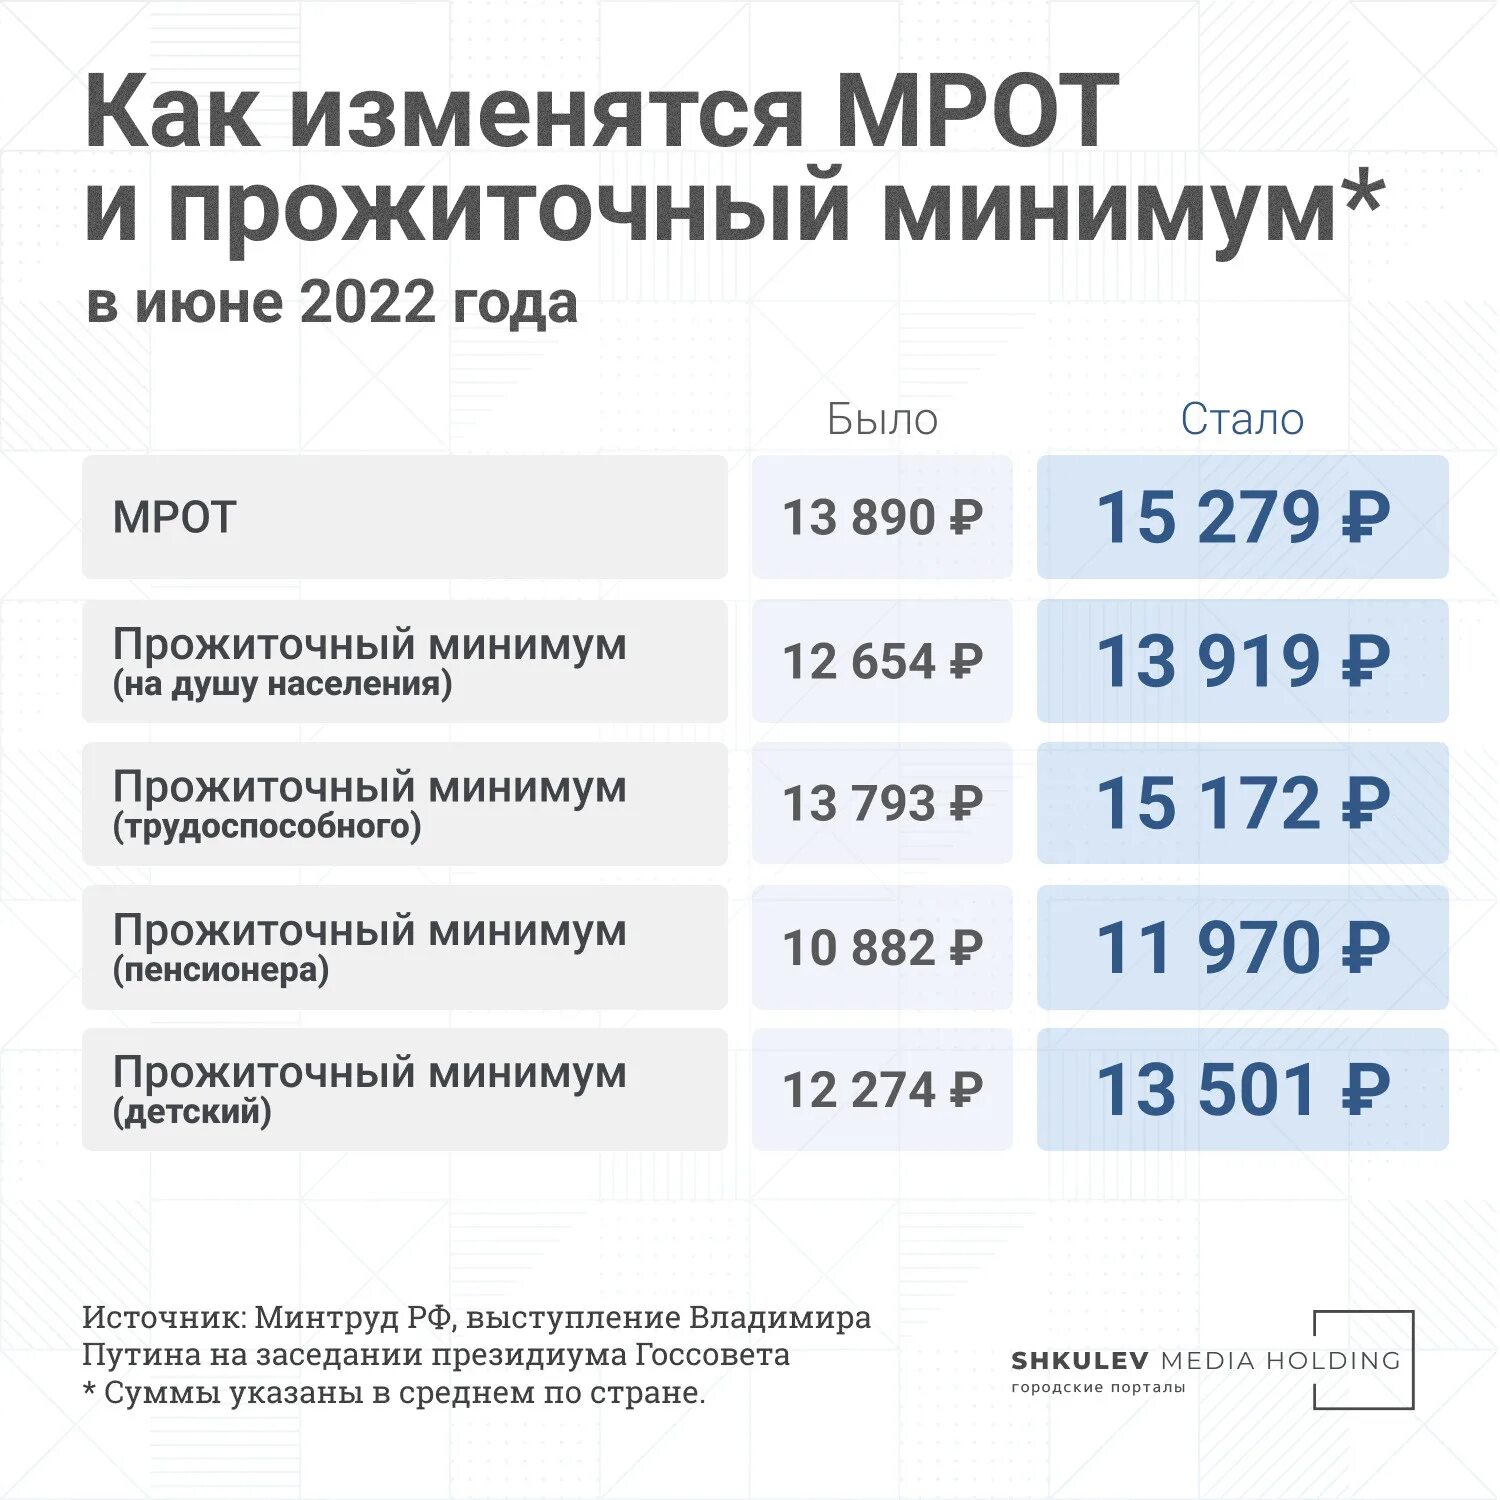 Увеличение пособий 2024 году. Прожиточный минимум в прошлом году в России 2023. МРОТ С июня 2022. МРОТ И прожиточный минимум 2022. Прожиточный минимум для трудоспособного населения в 2022.